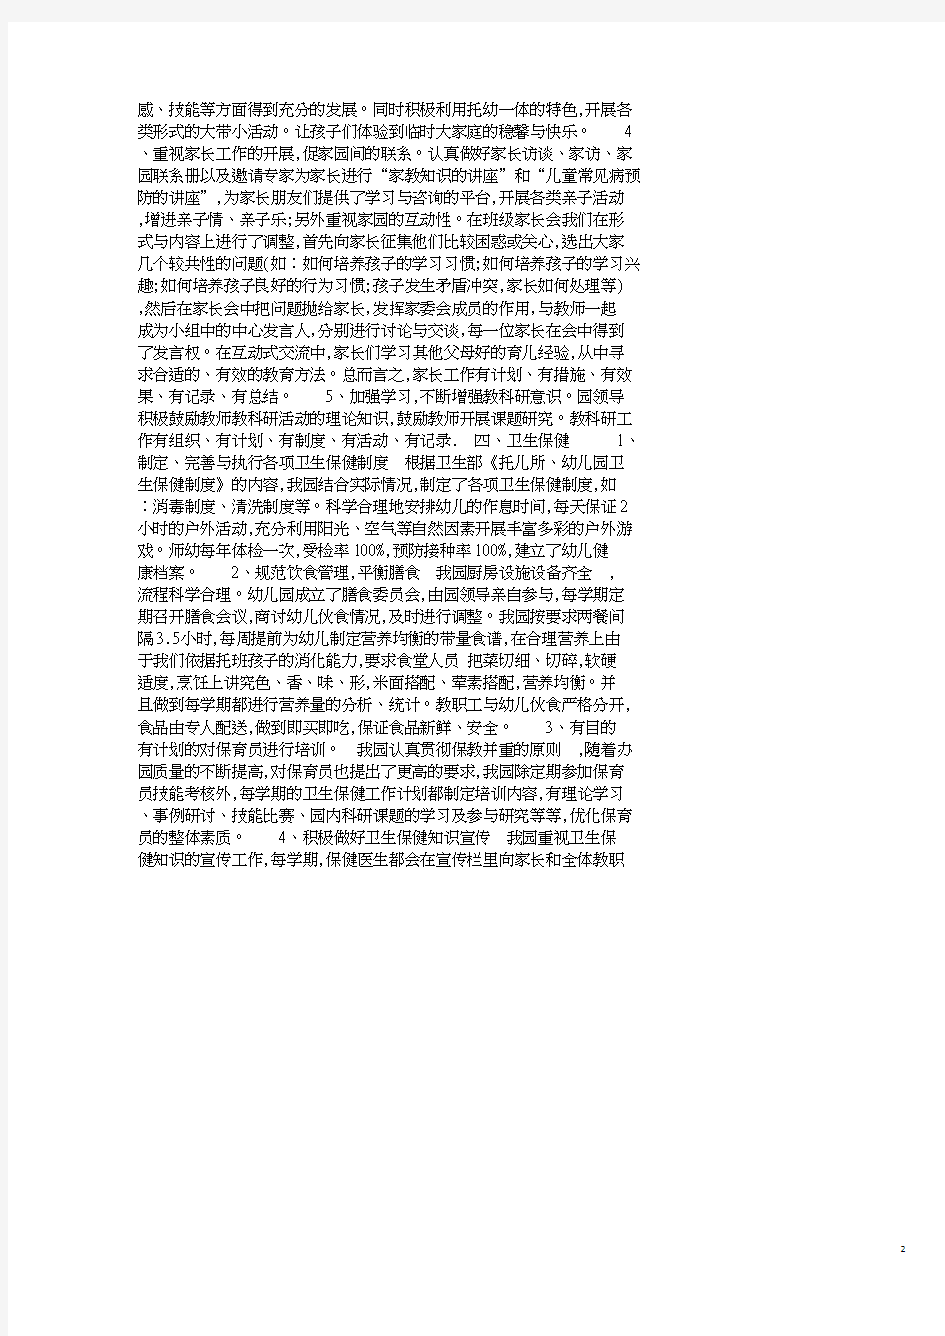 民办幼儿园自查报告4篇.pdf